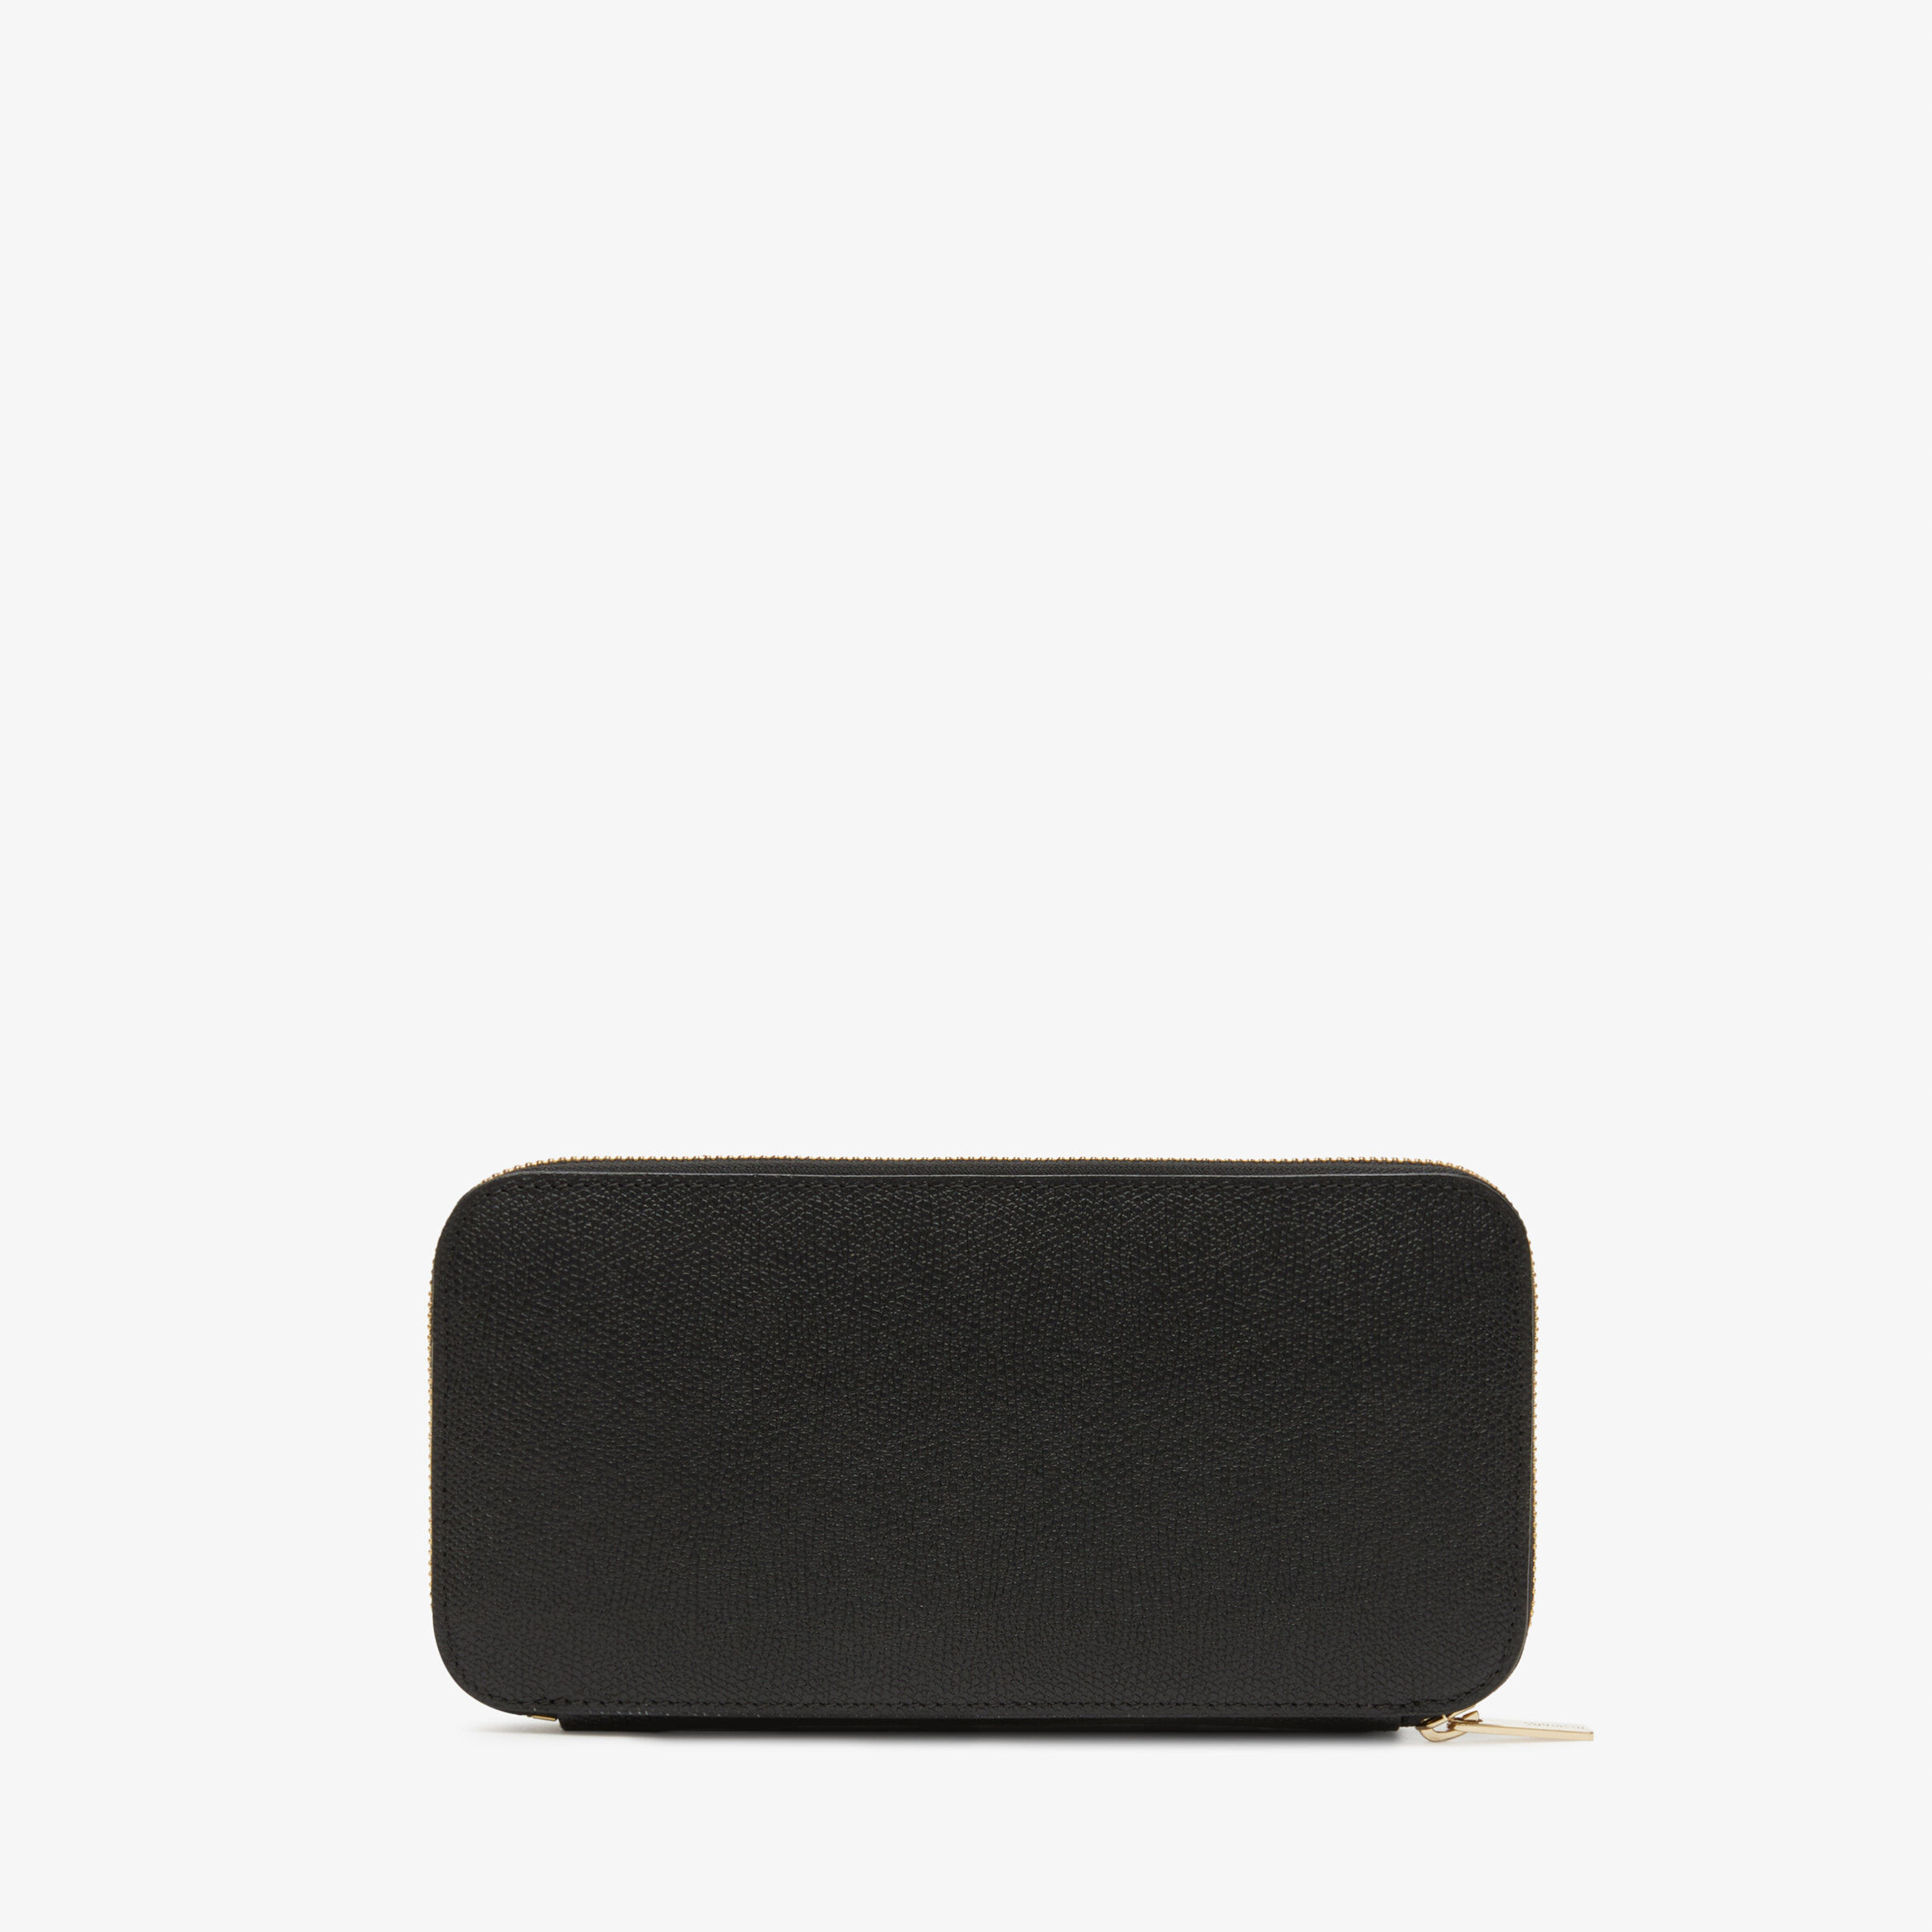 Zip around 12 cc wallet - Black